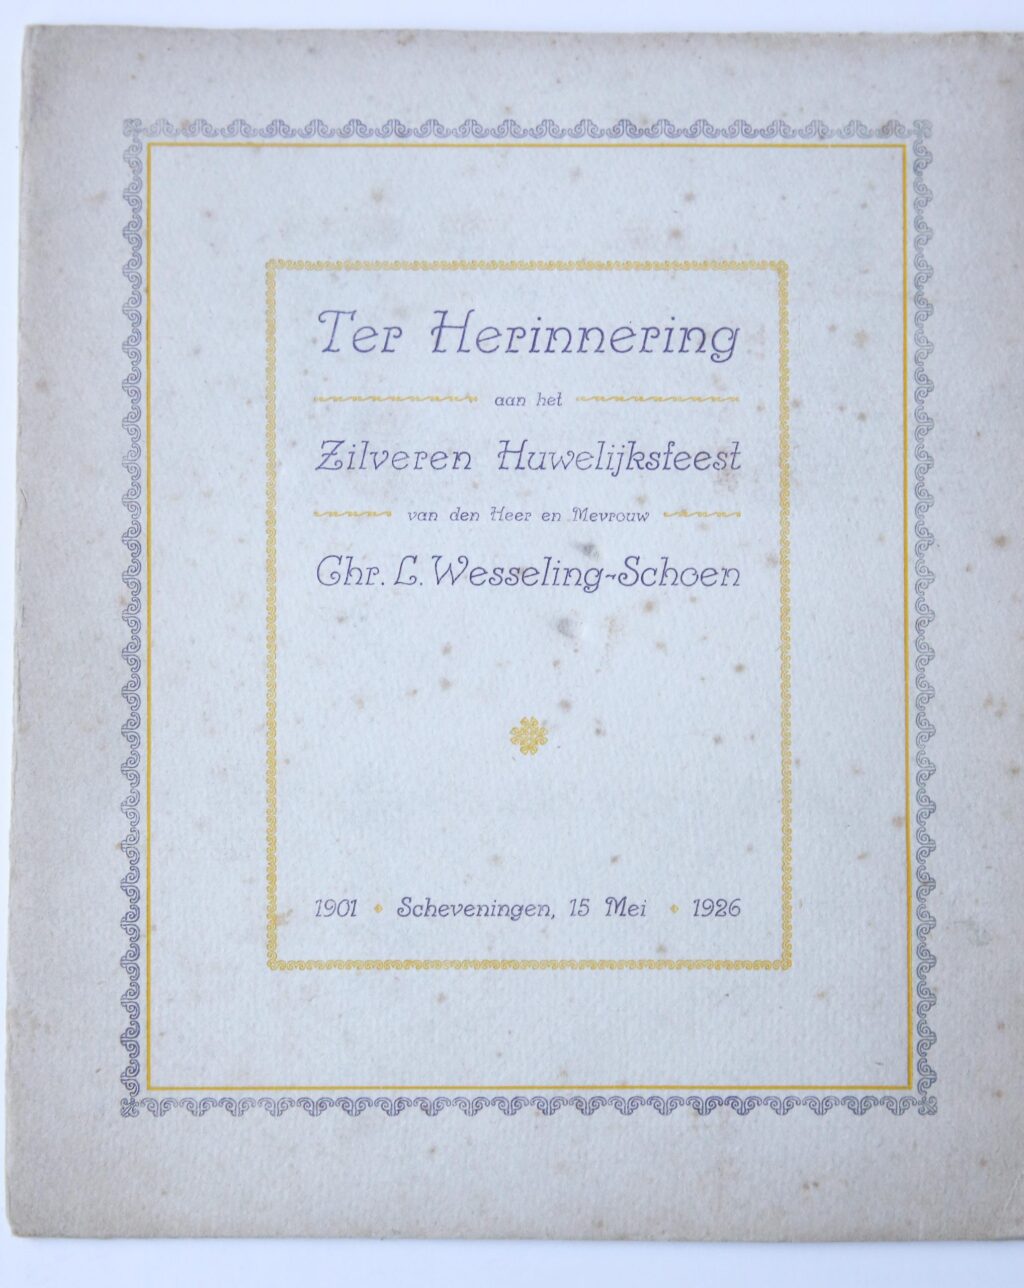 Ter herinnering aan het zilveren huwelijksfeest van den heer en mevrouw Chr. L. Wesseling-schoen, Scheveningen 15 Mei 1926. Omslag met deze tekst, waarin een foto op karton van het hele gezin Wesseling. 4º.